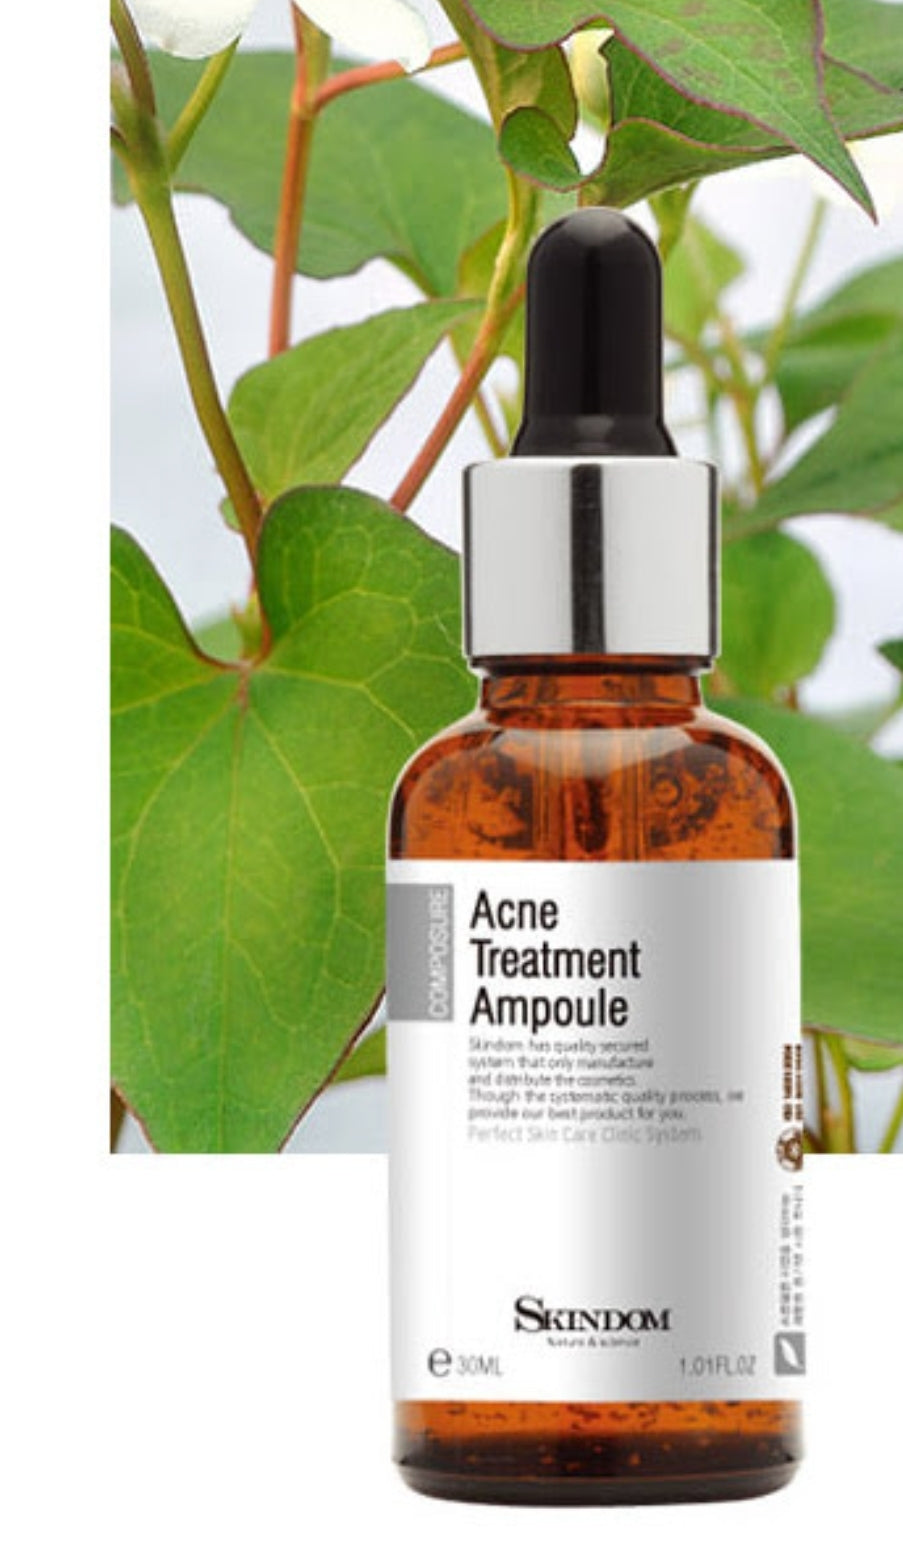 Acne Treatment Ampoule